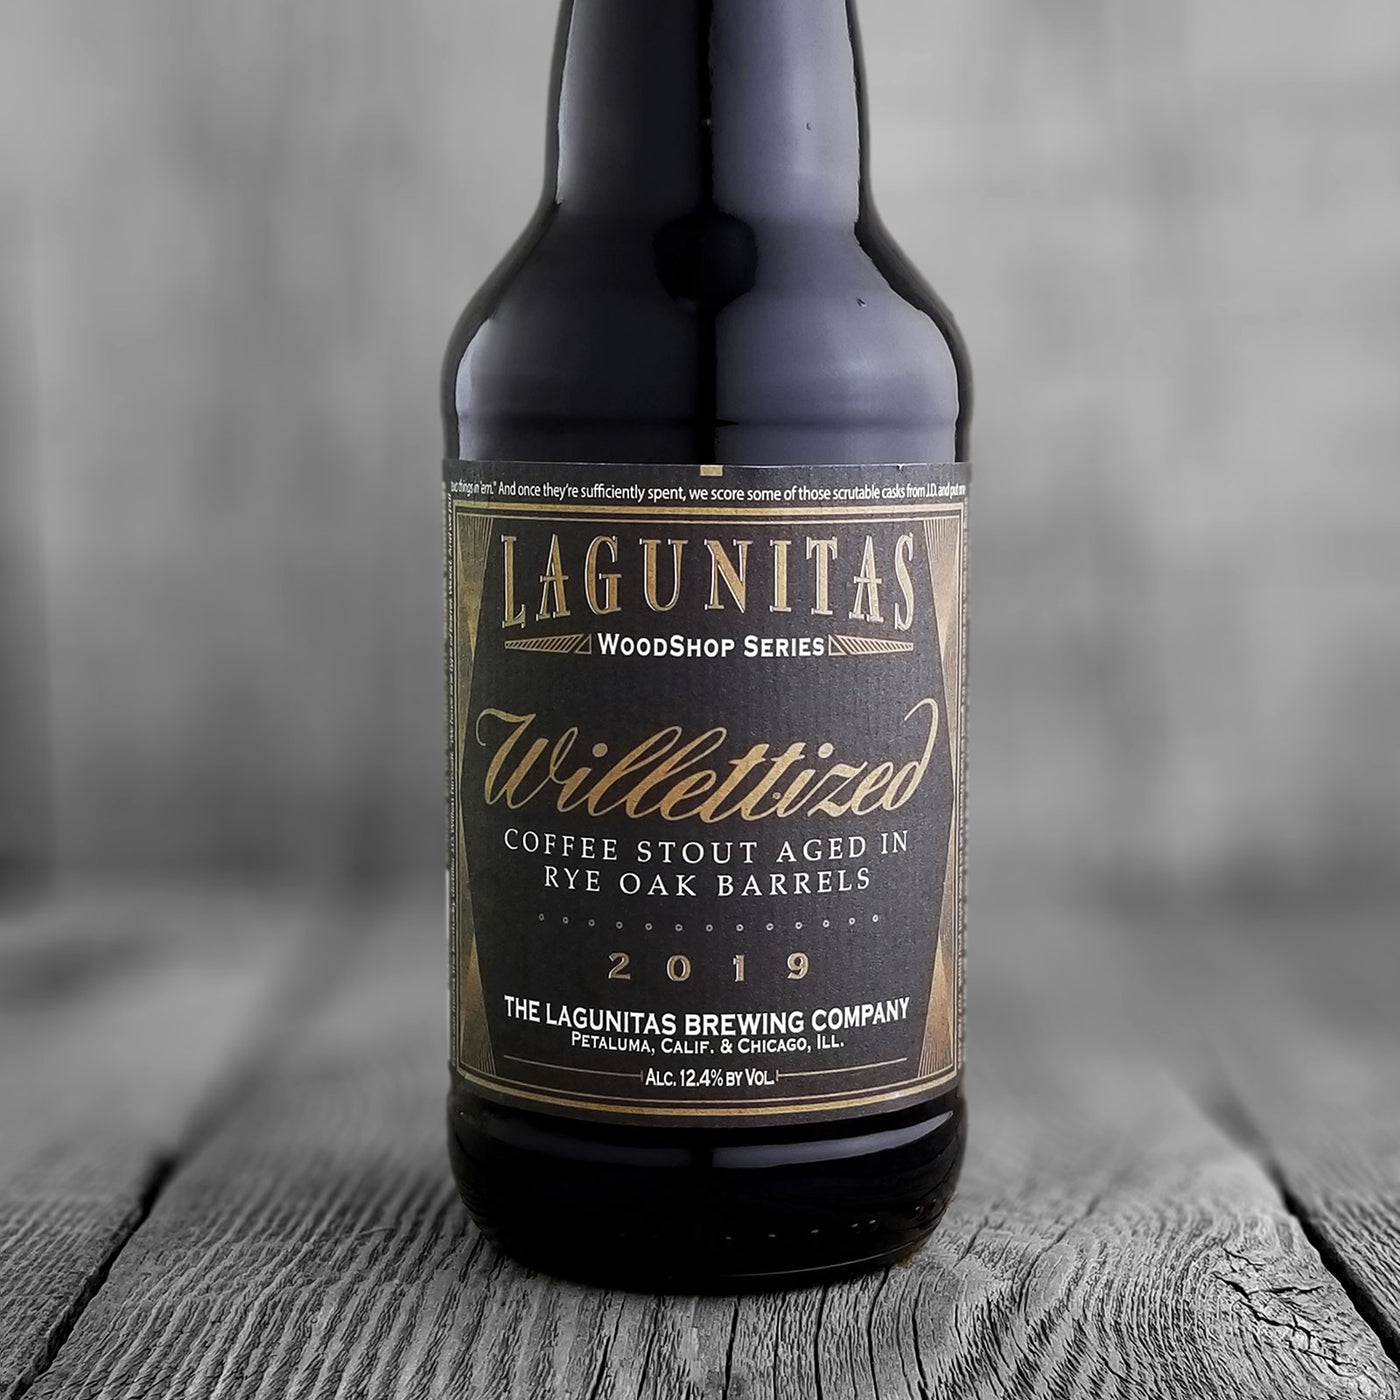 Lagunitas Willettized Coffee Stout 2019